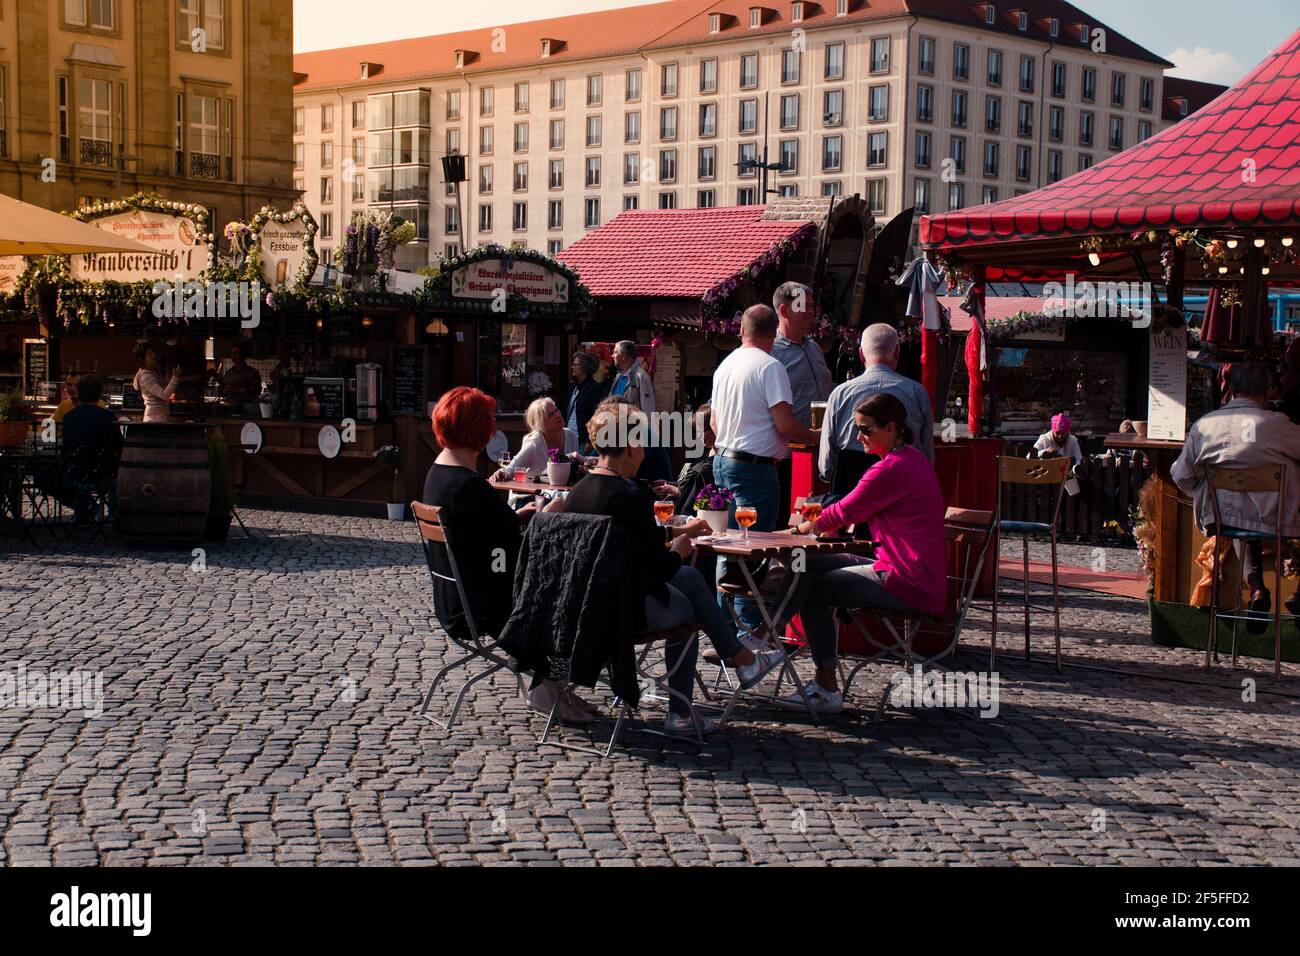 17 mai 2019 Dresde, Allemagne - Biergarten at Altmarkt. Les gens dans un pub de jardin de bière. Banque D'Images